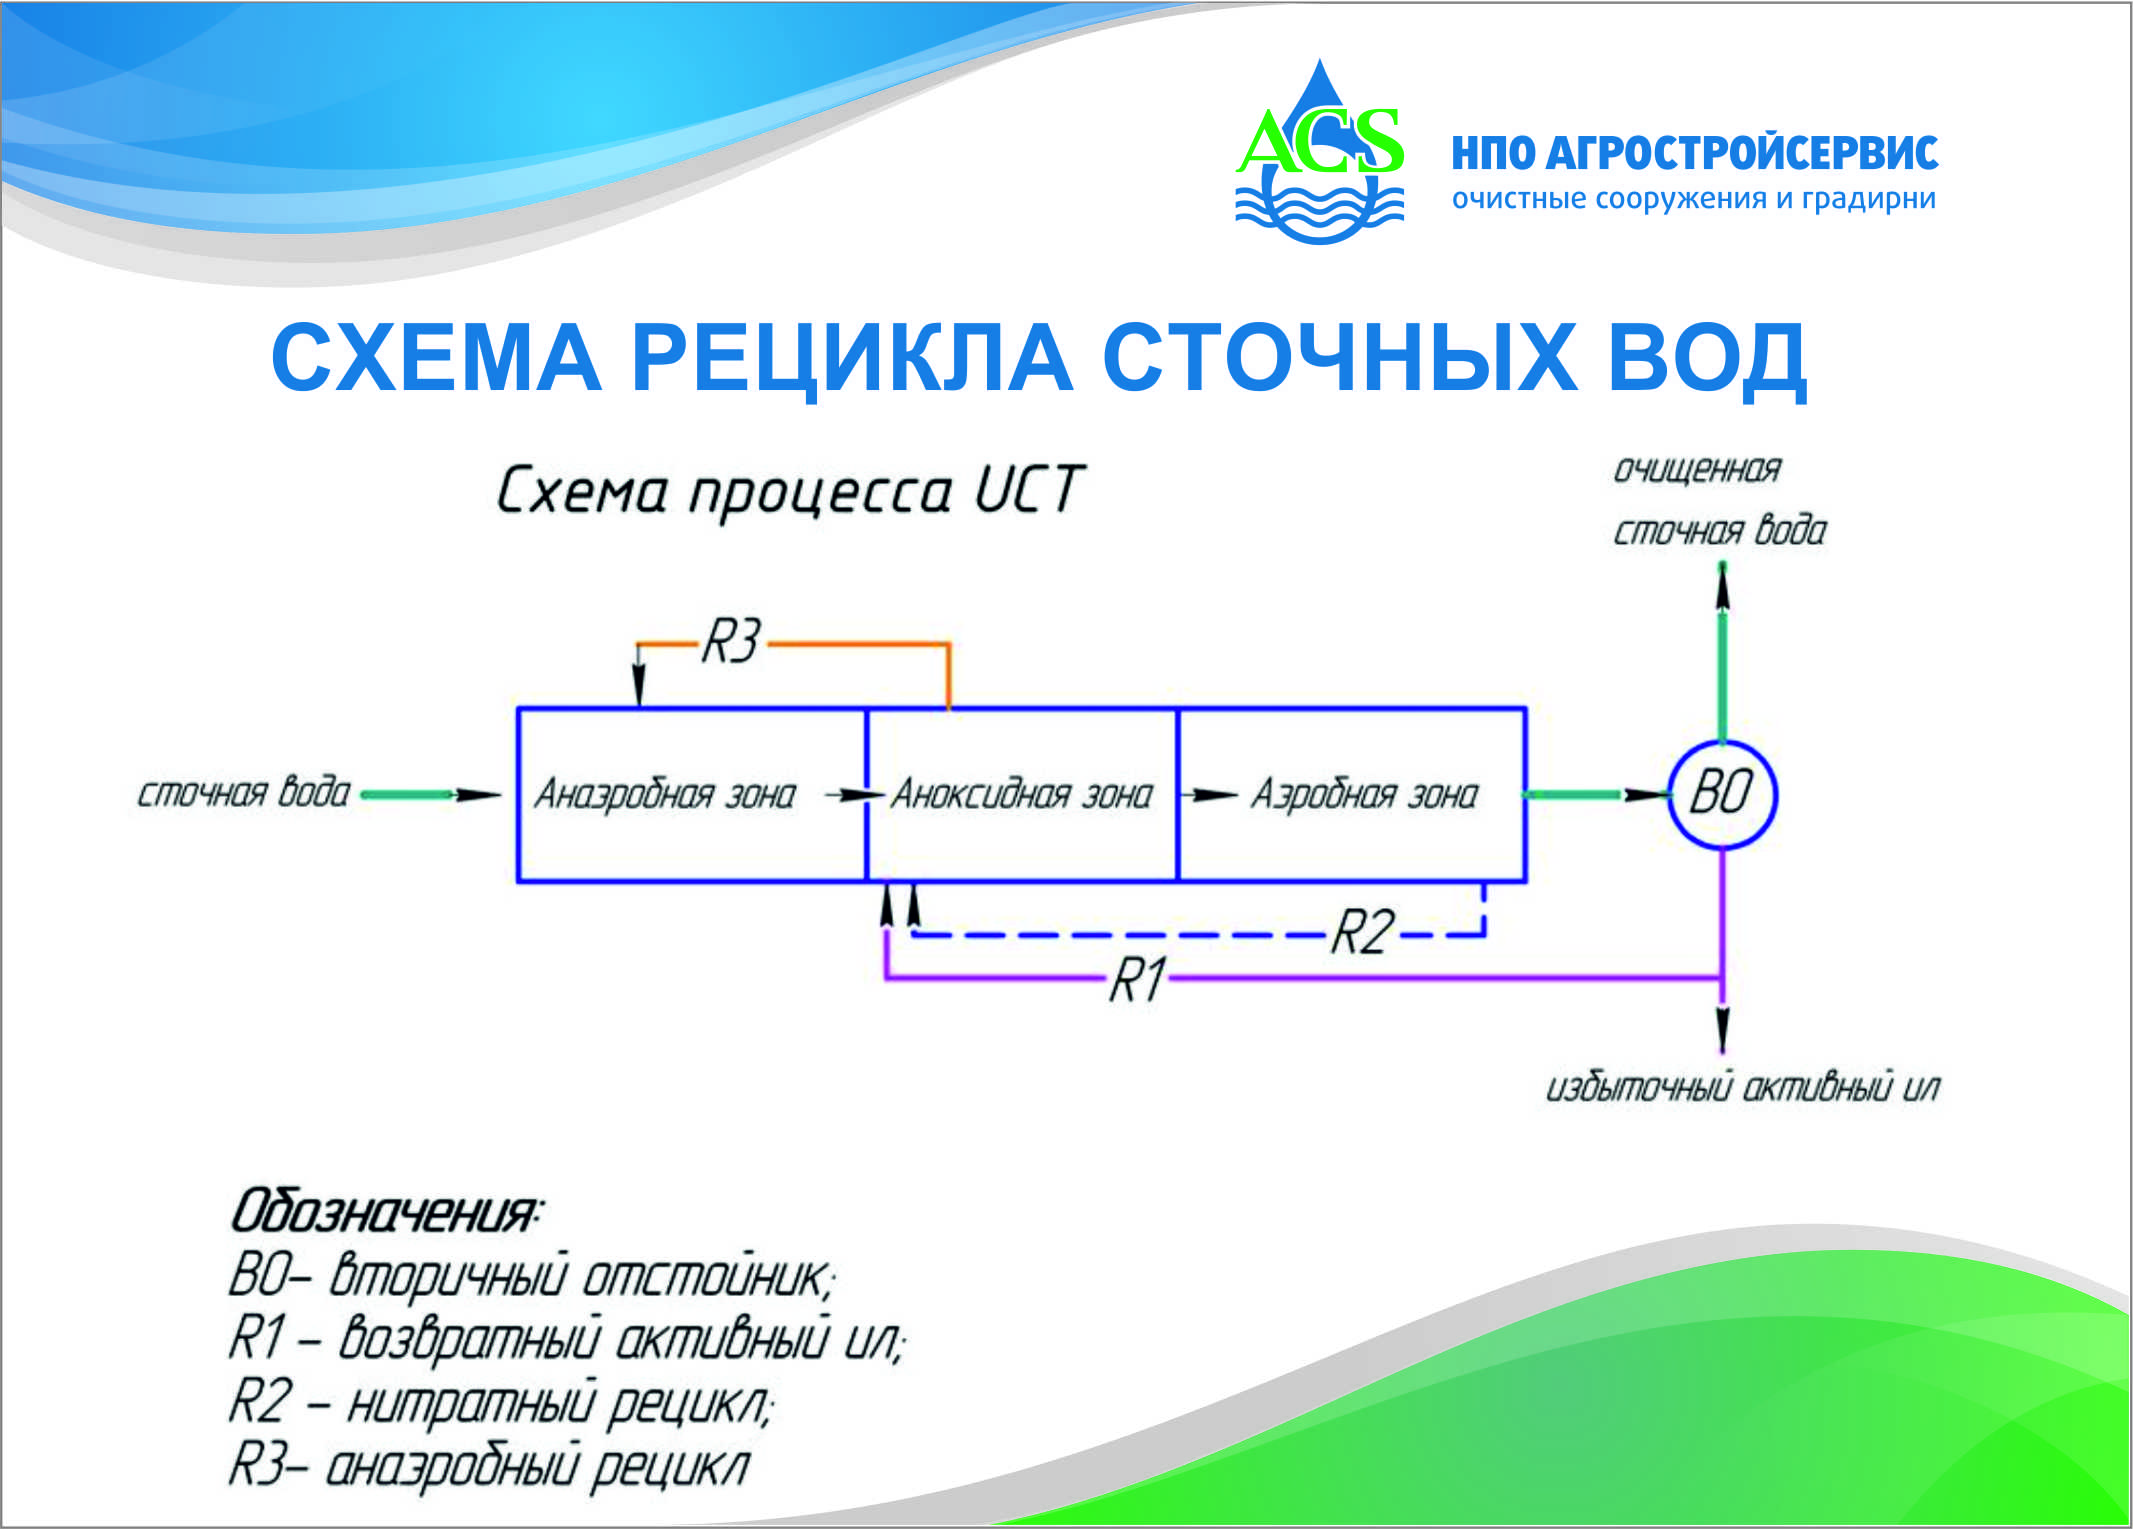 Схема процесса UCT